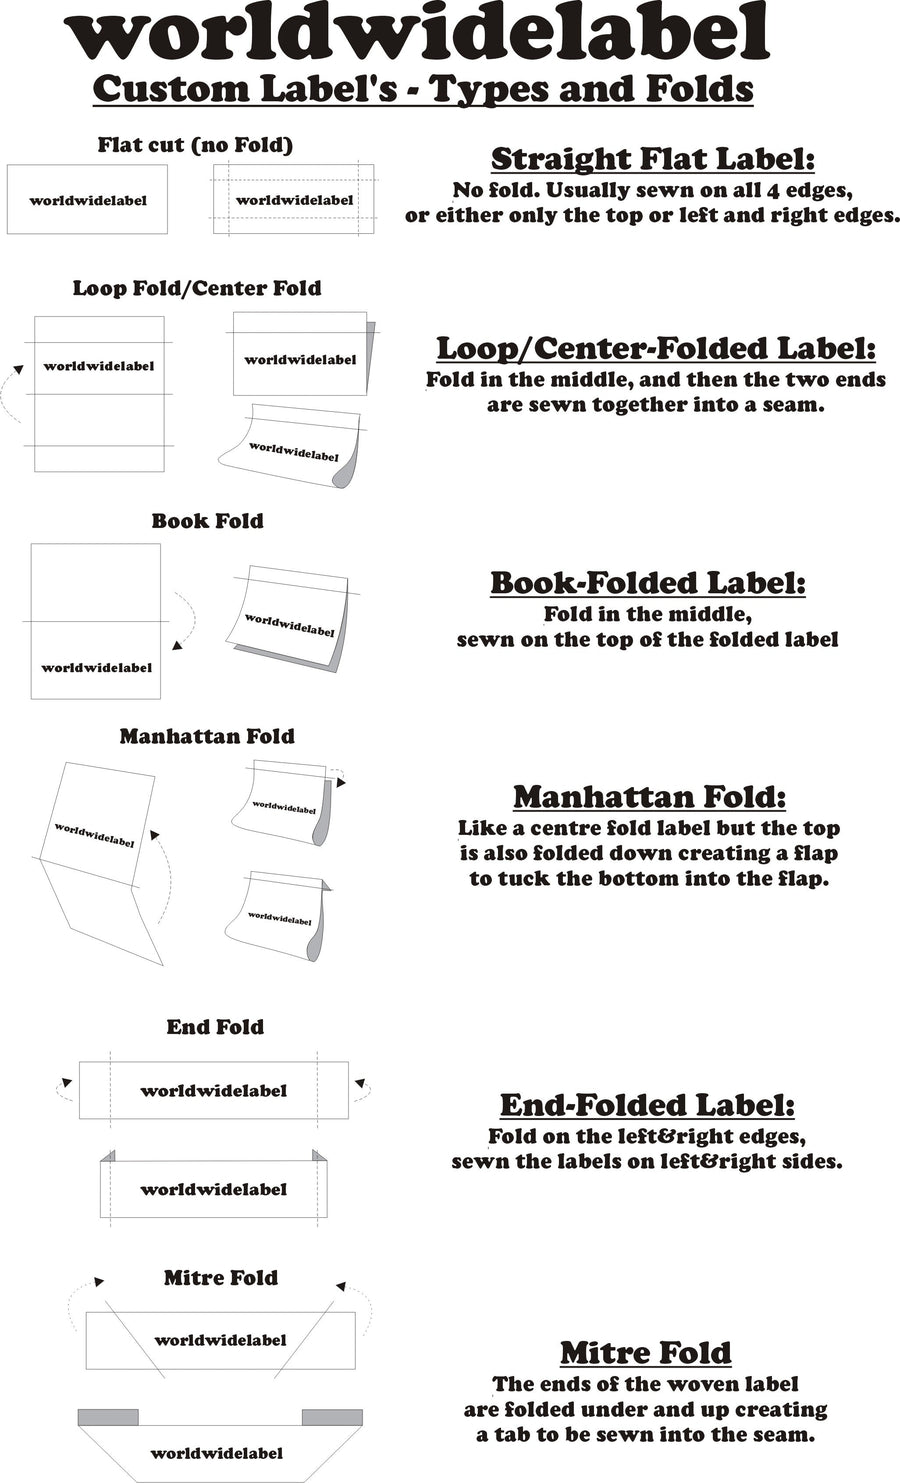 Etiquetas tejidas personalizadas con acabado metálico (ilustraciones) para logotipos de marcas de lujo 